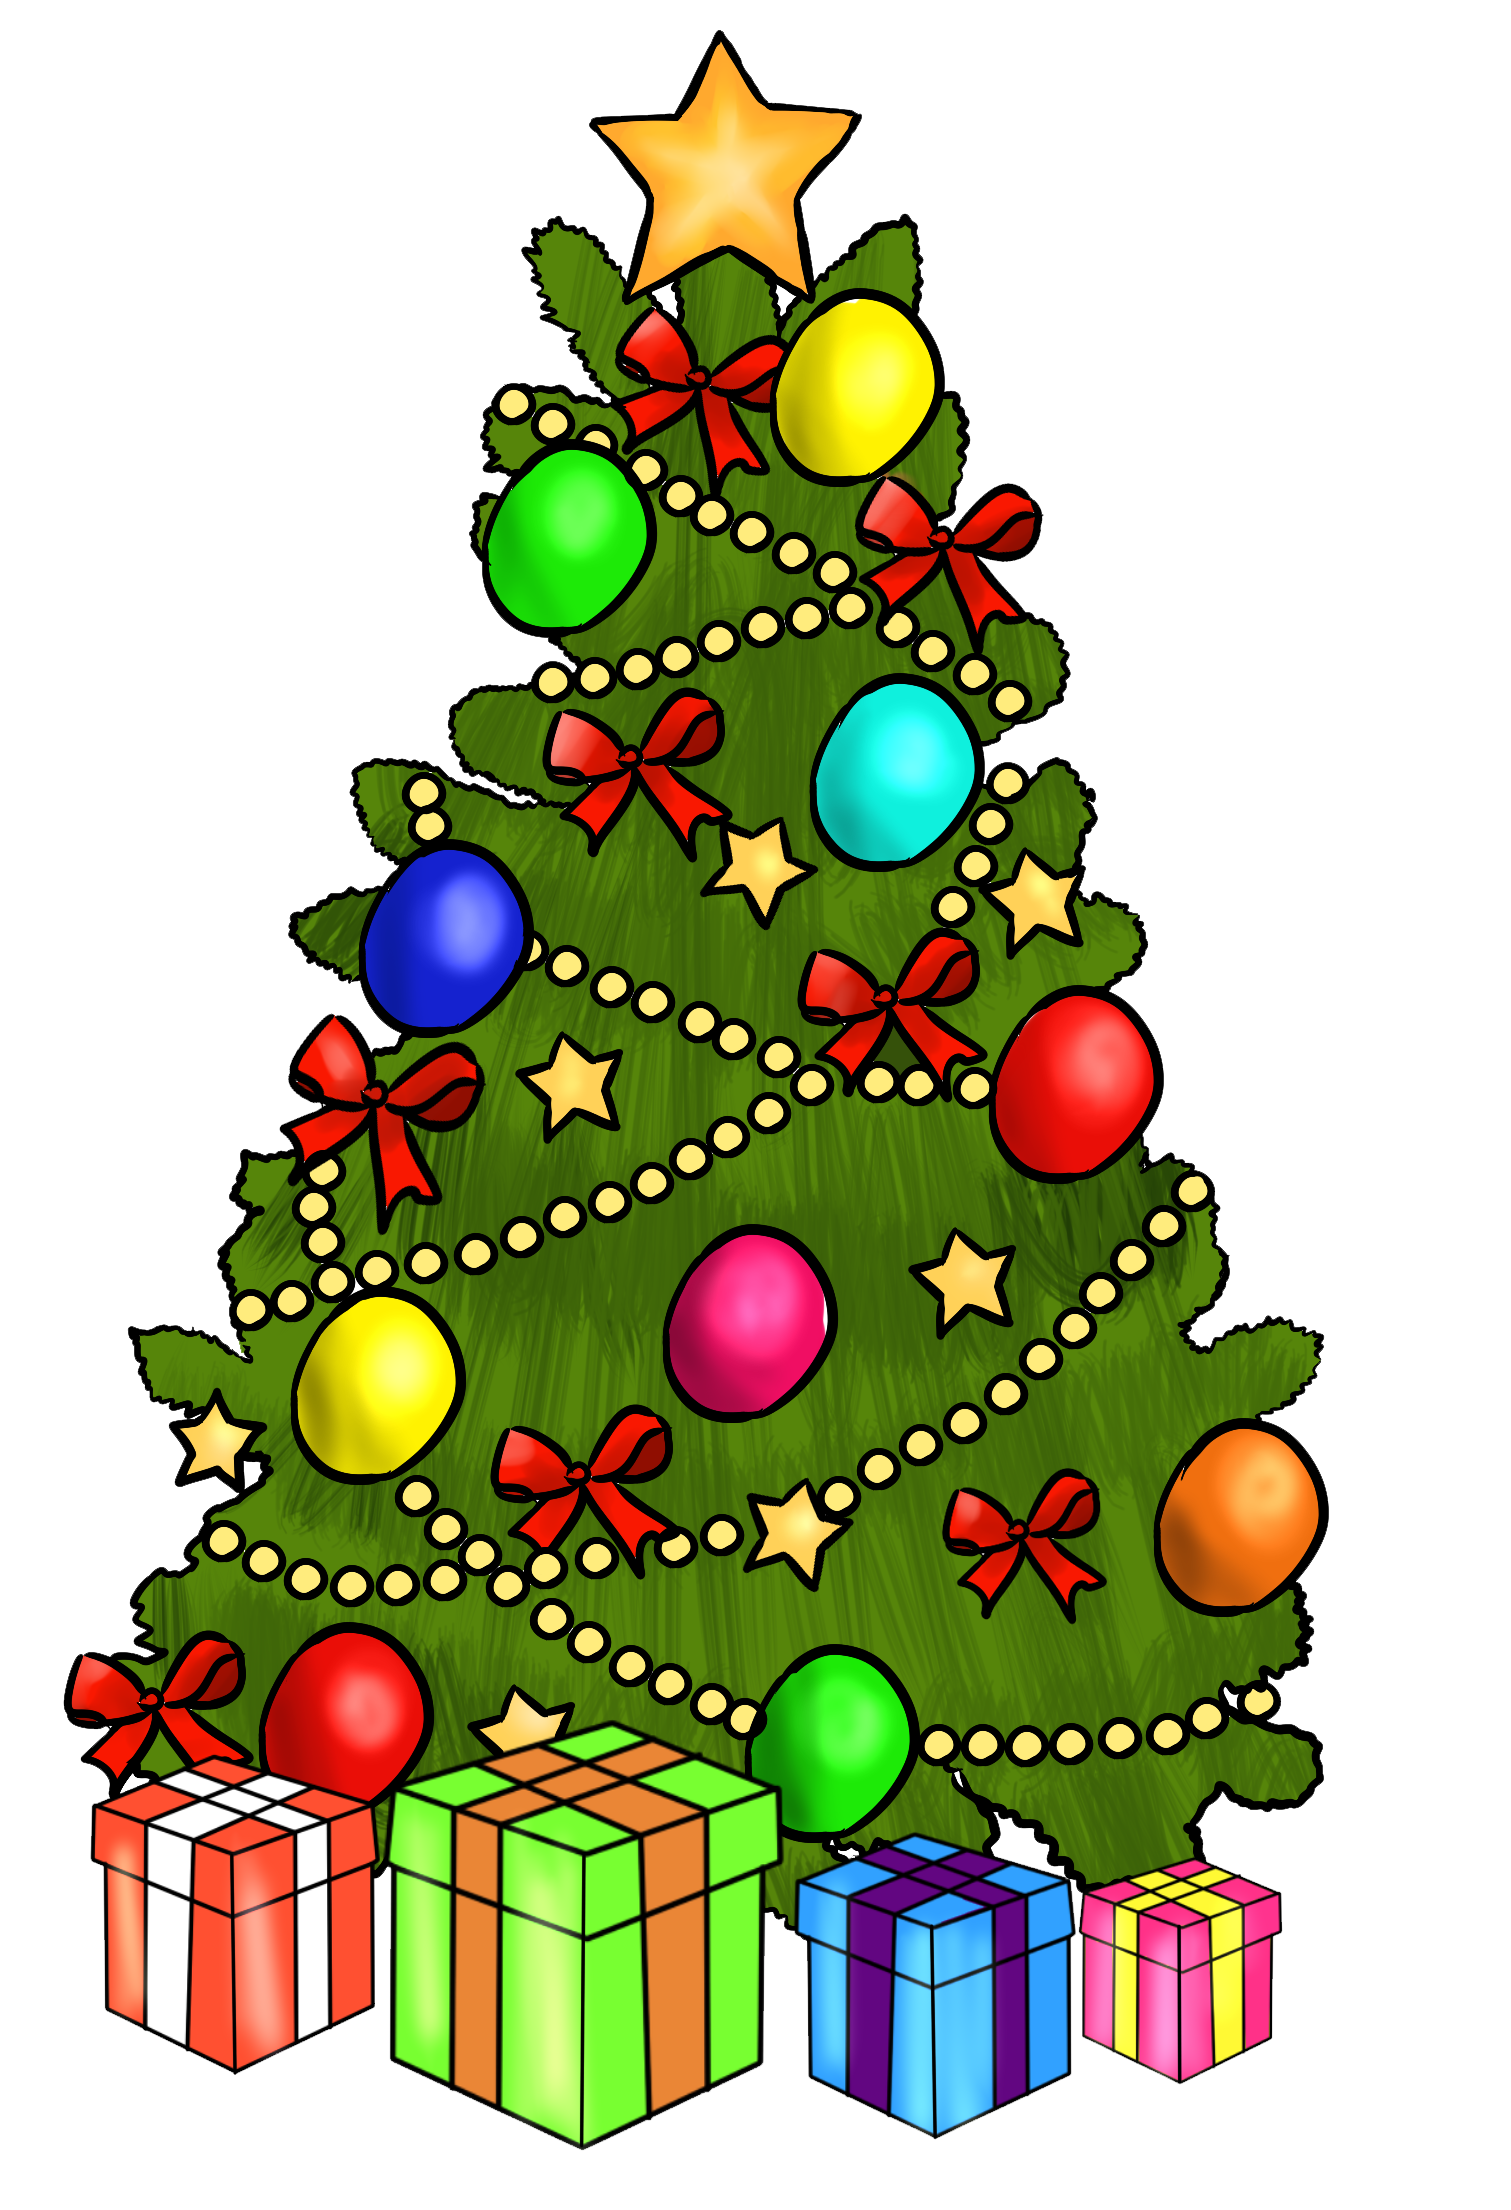 Xmas Stuff For &gt; Cute Cartoon Christmas Tree - www.bagssaleusa.com